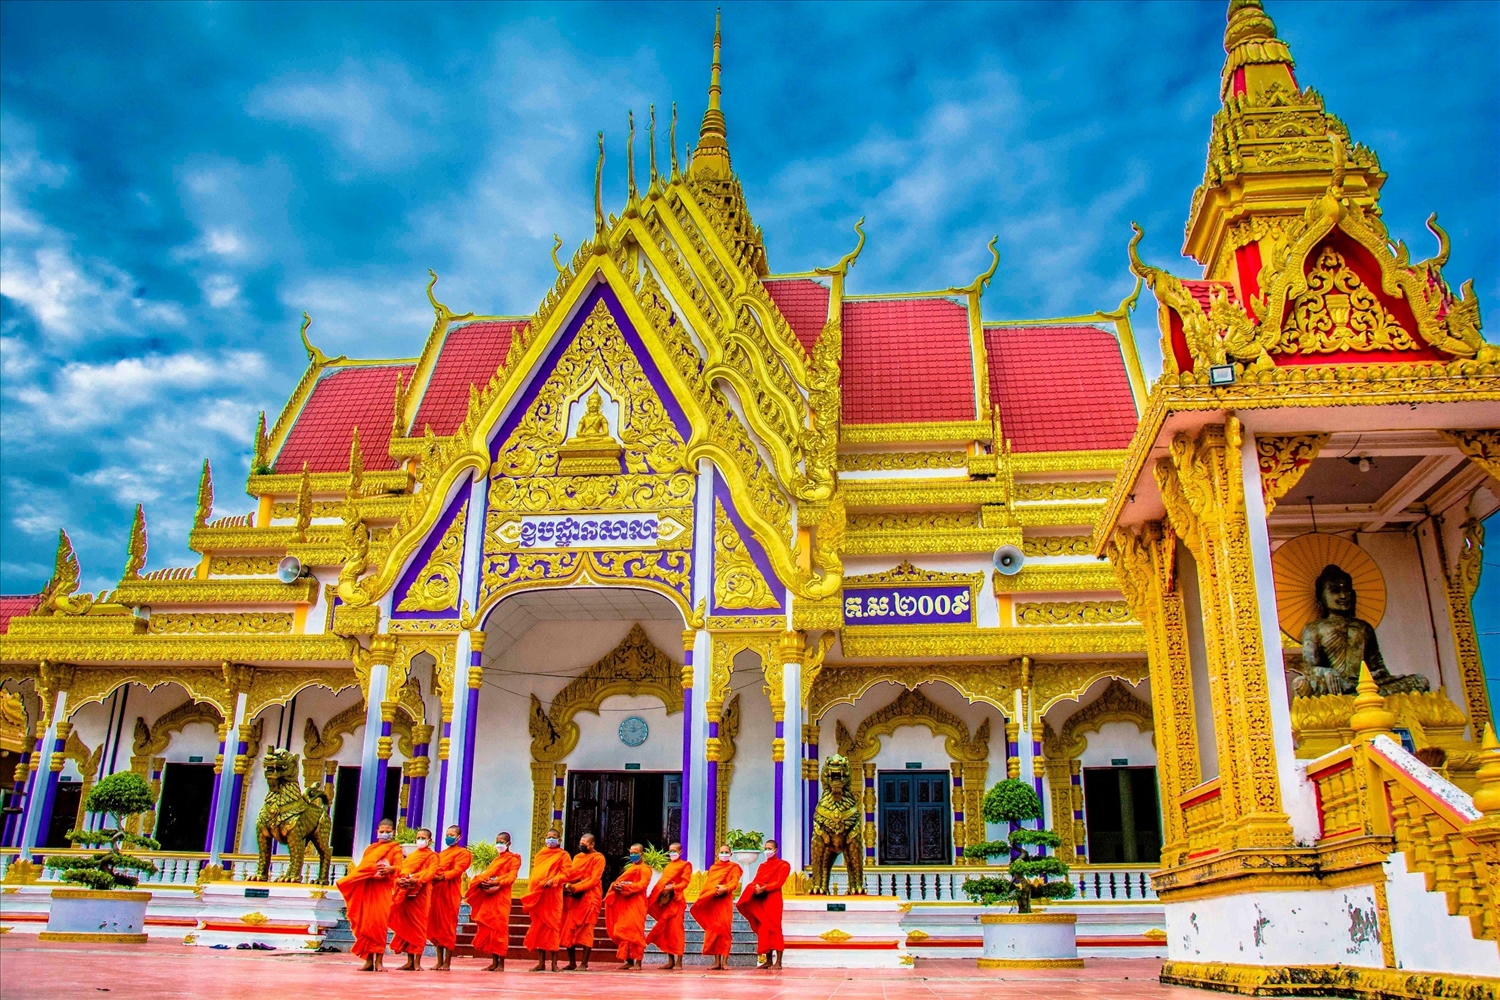 Hiện nay, đa số chùa Phật giáo Nam tông Khmer đều được tu bổ khang trang, giữ gìn được những đường nét kiến trúc tiêu biểu, là nơi bảo lưu các di sản văn hóa đặc trưng của người Khmer, đáp ứng nhu cầu sinh hoạt tín ngưỡng của đồng bào